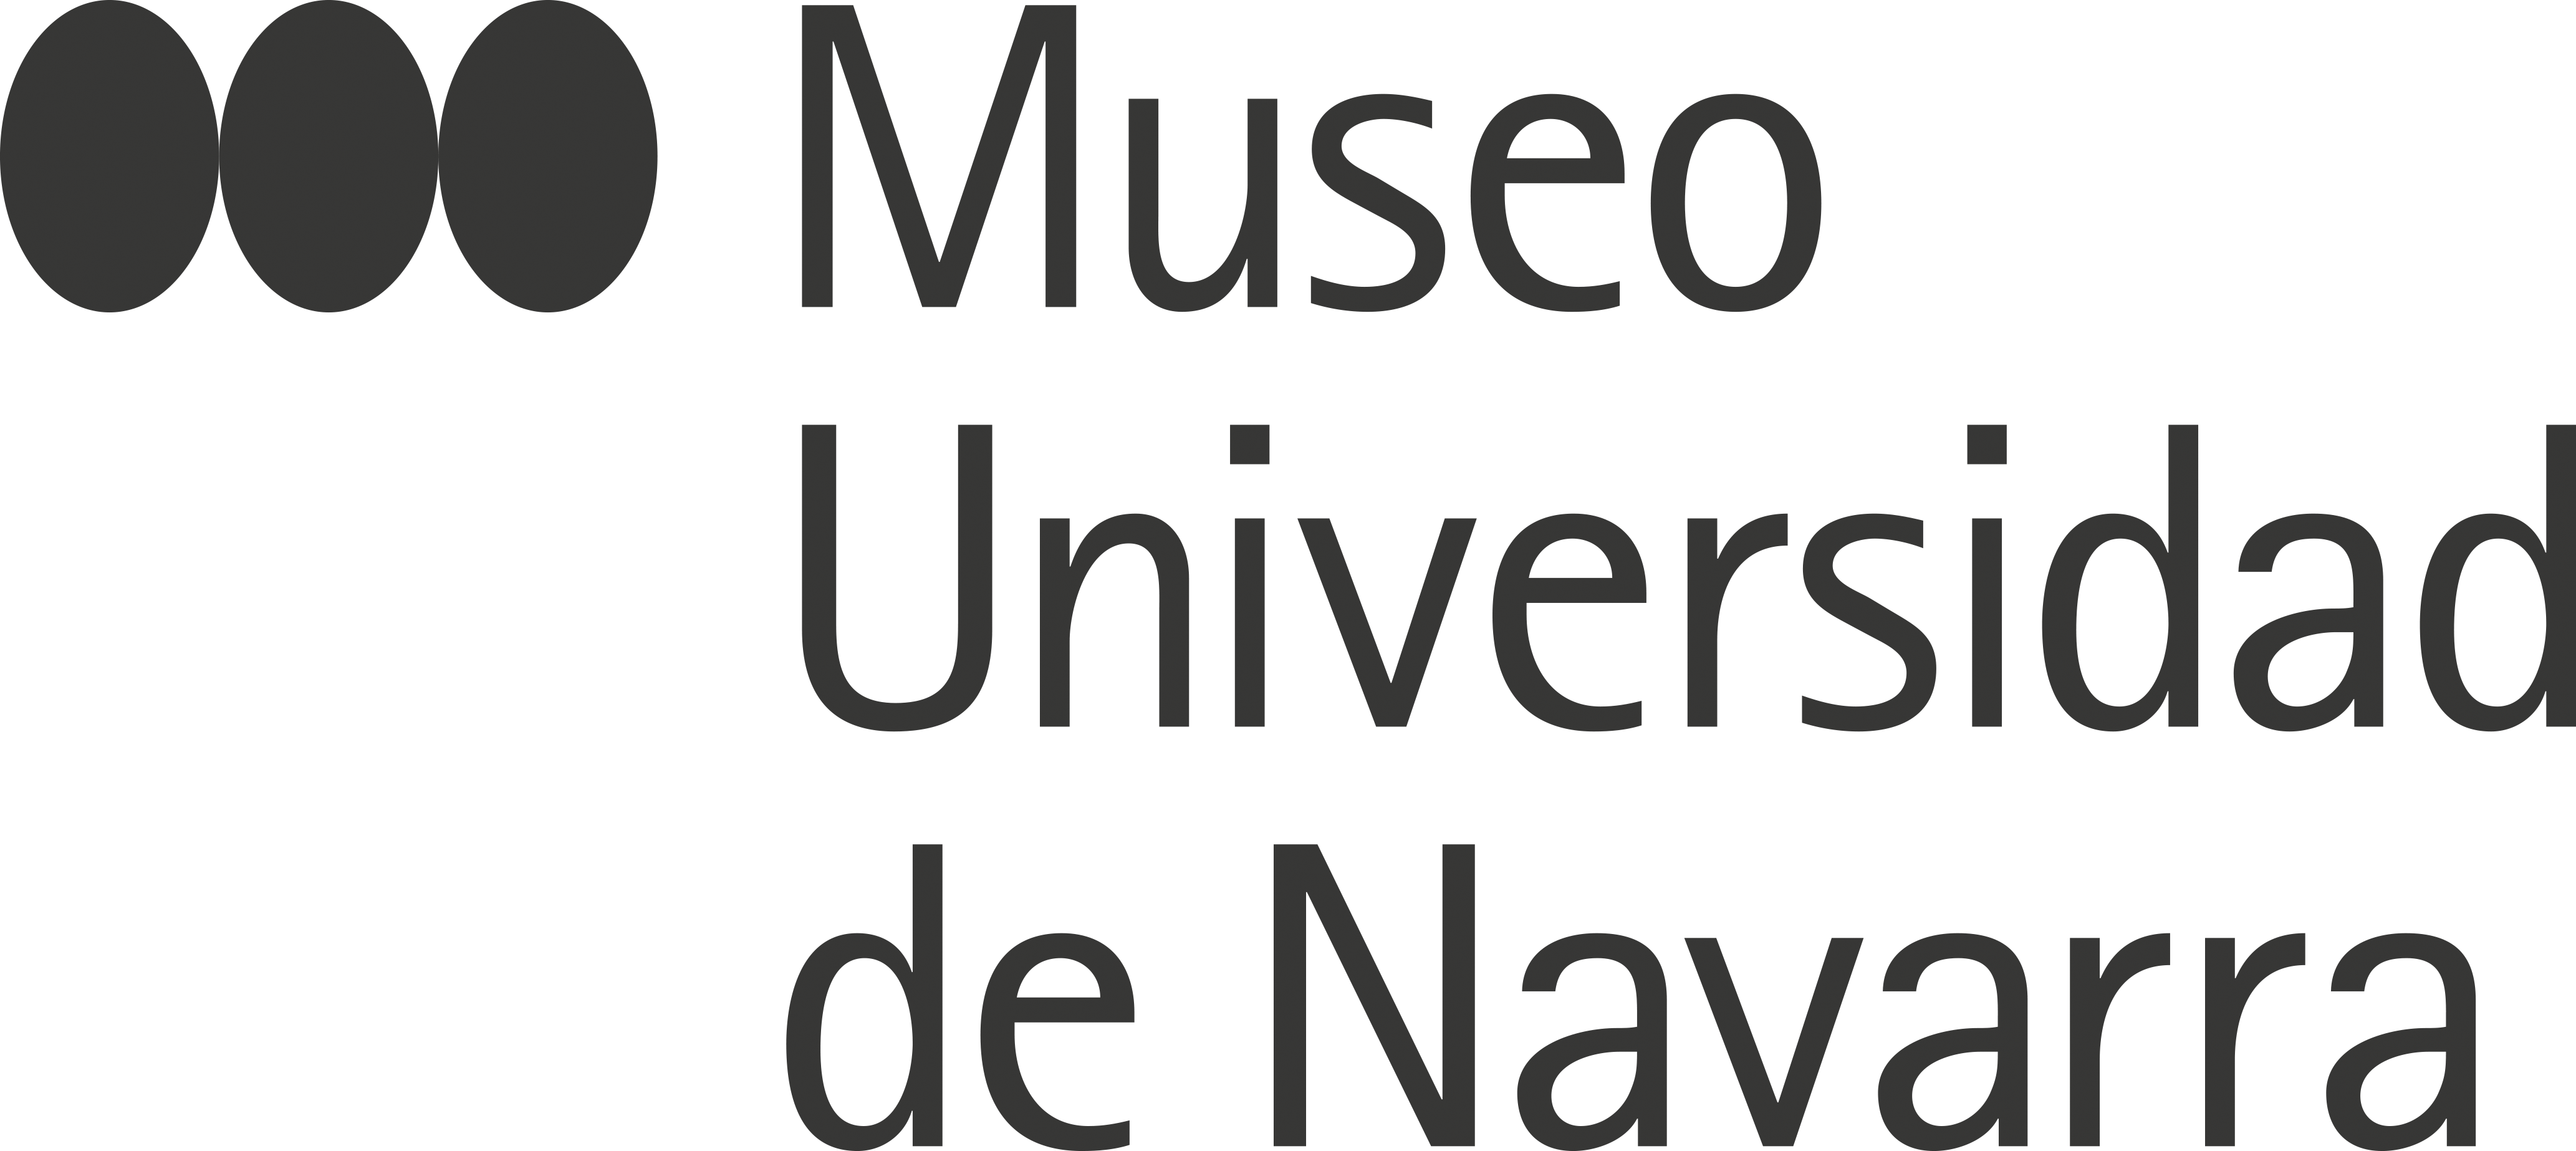 Museo Universidad de Navarra